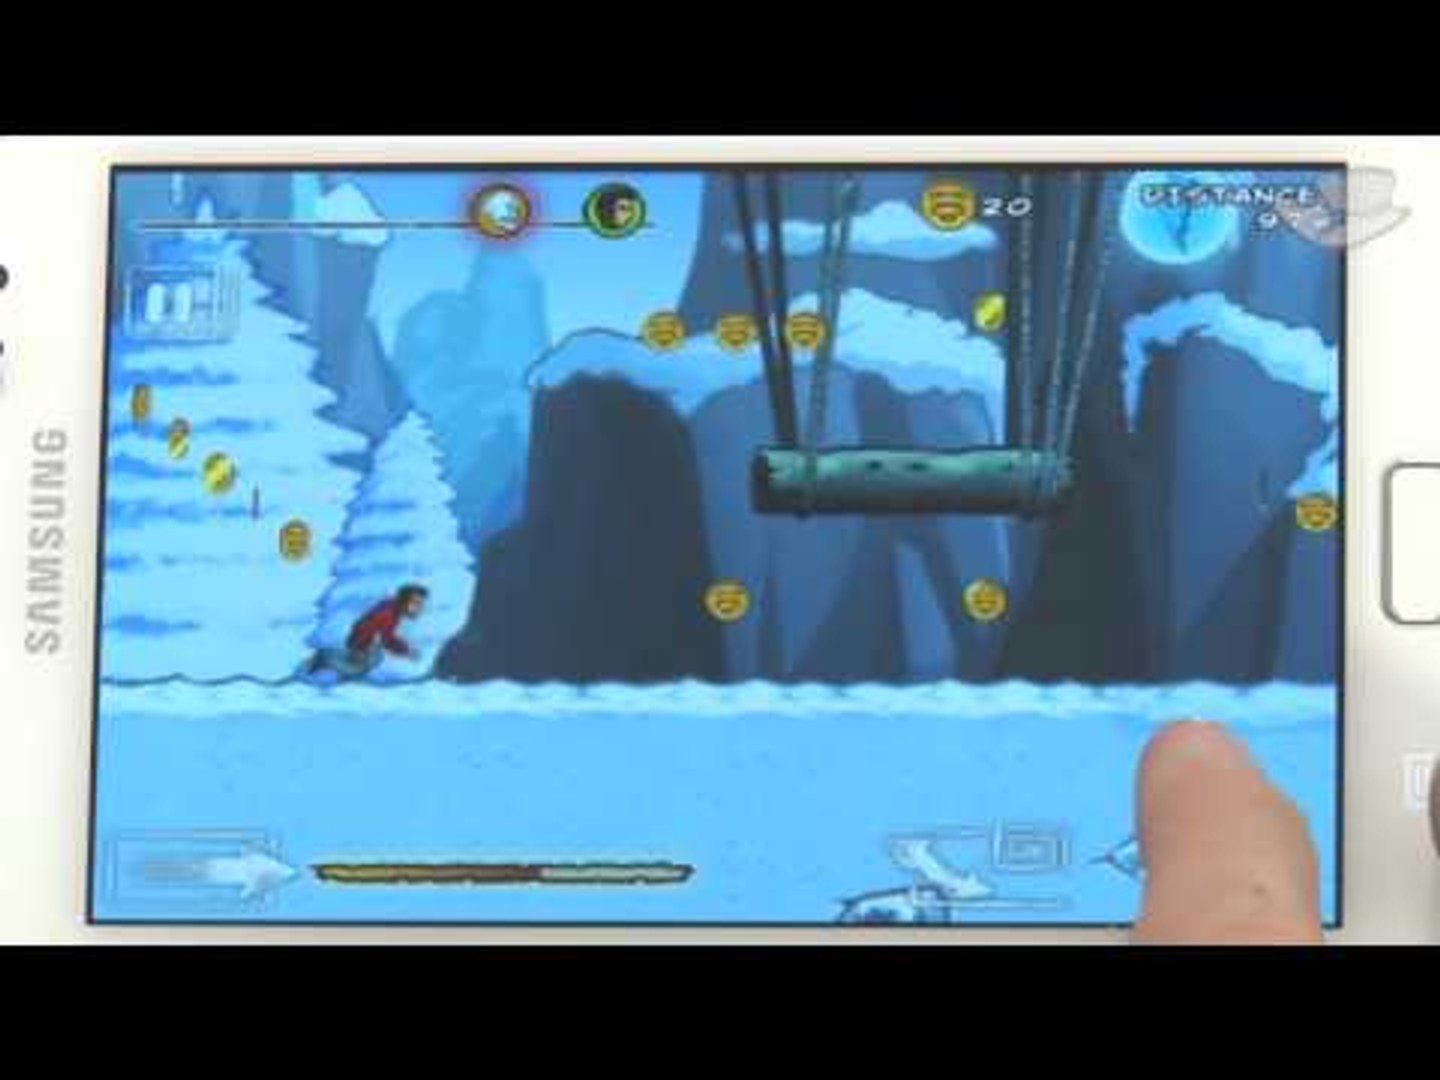 Os melhores jogos de tiro para Android [Dicas] - Baixaki - video Dailymotion